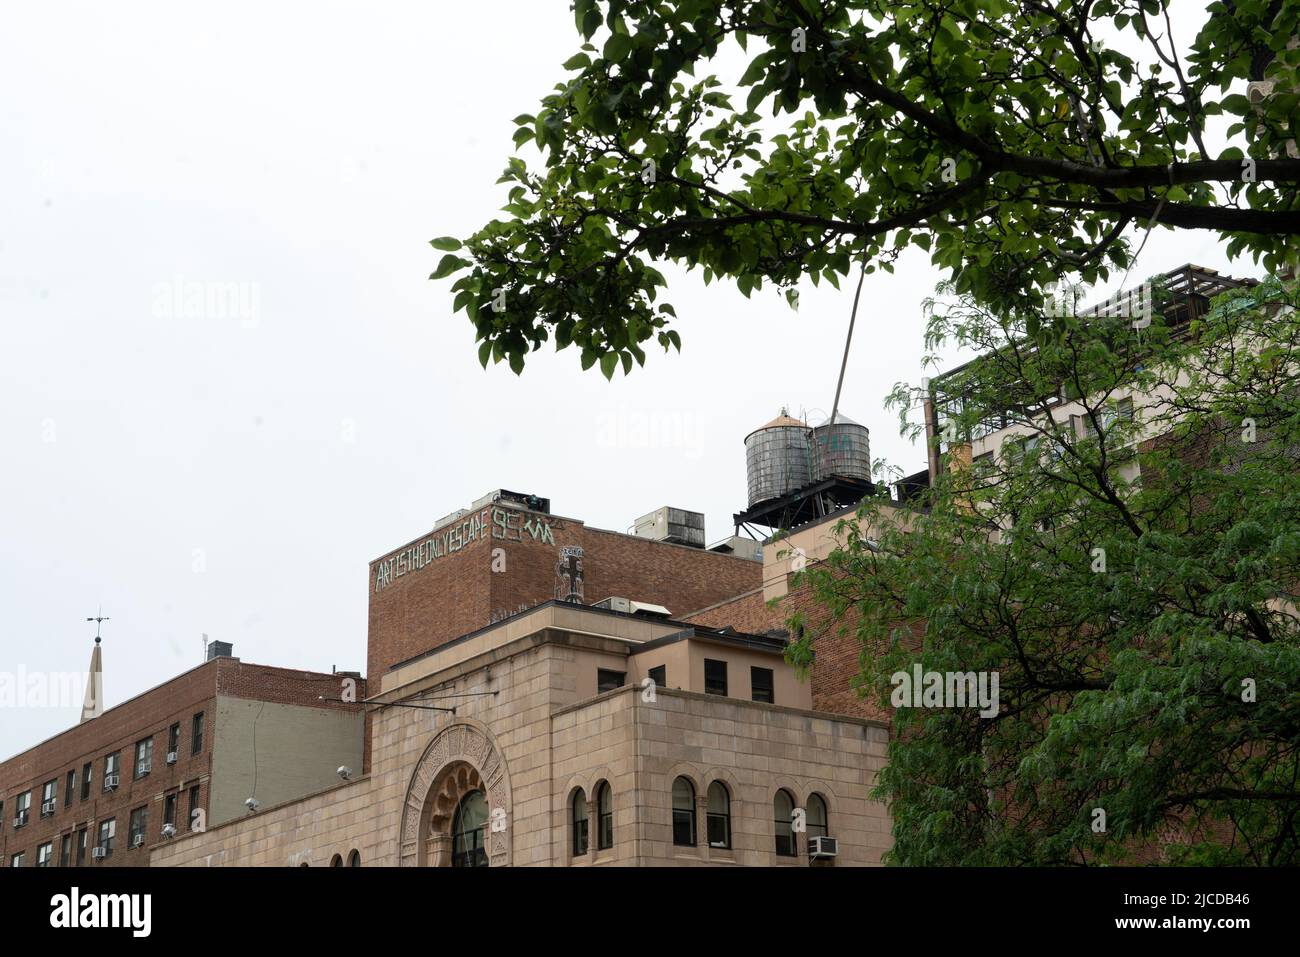 Die Skyline von Manhattans East Village von der Second Ave. In der Nähe der 12. St. umfasst zwei Wassertürme und das Dach eines historischen jiddischen Theaters. Stockfoto